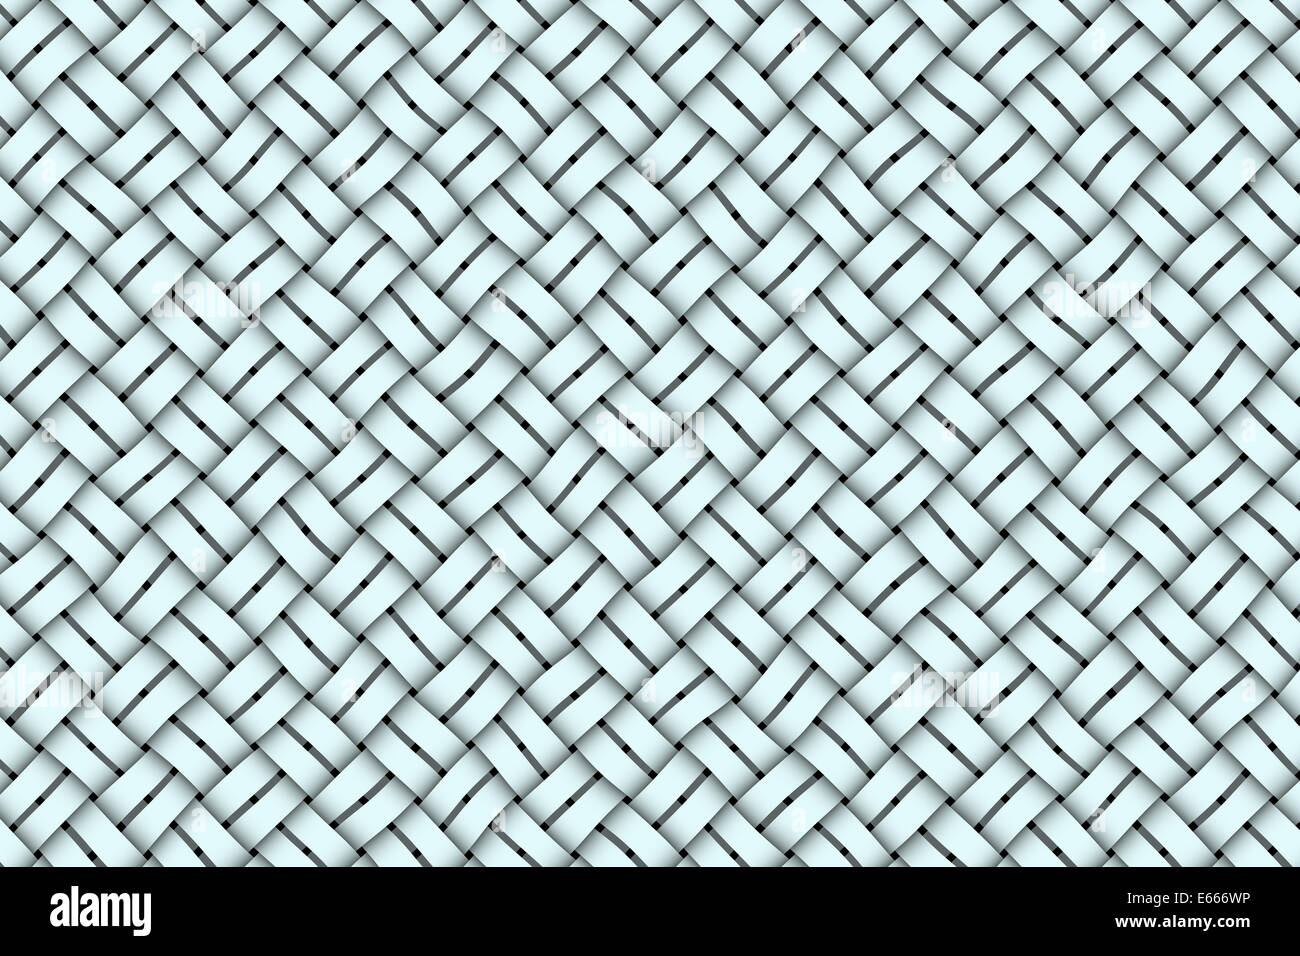 Weave pattern, intertwined bands, interwoven, interlace pattern background Stock Photo